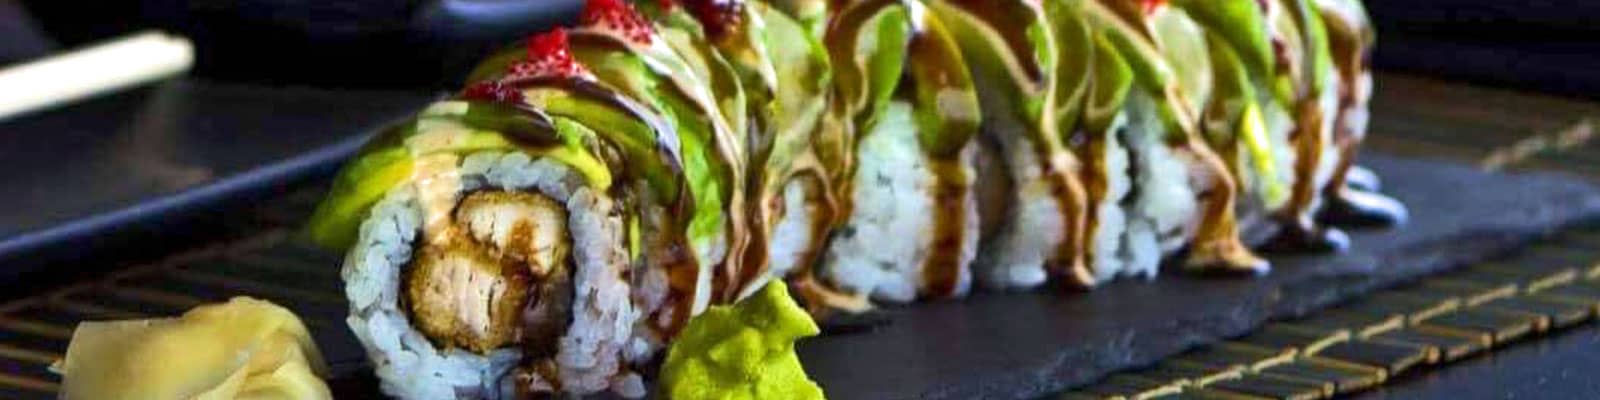 osaka-sushi-restaurant-bonaire-slider-image-1